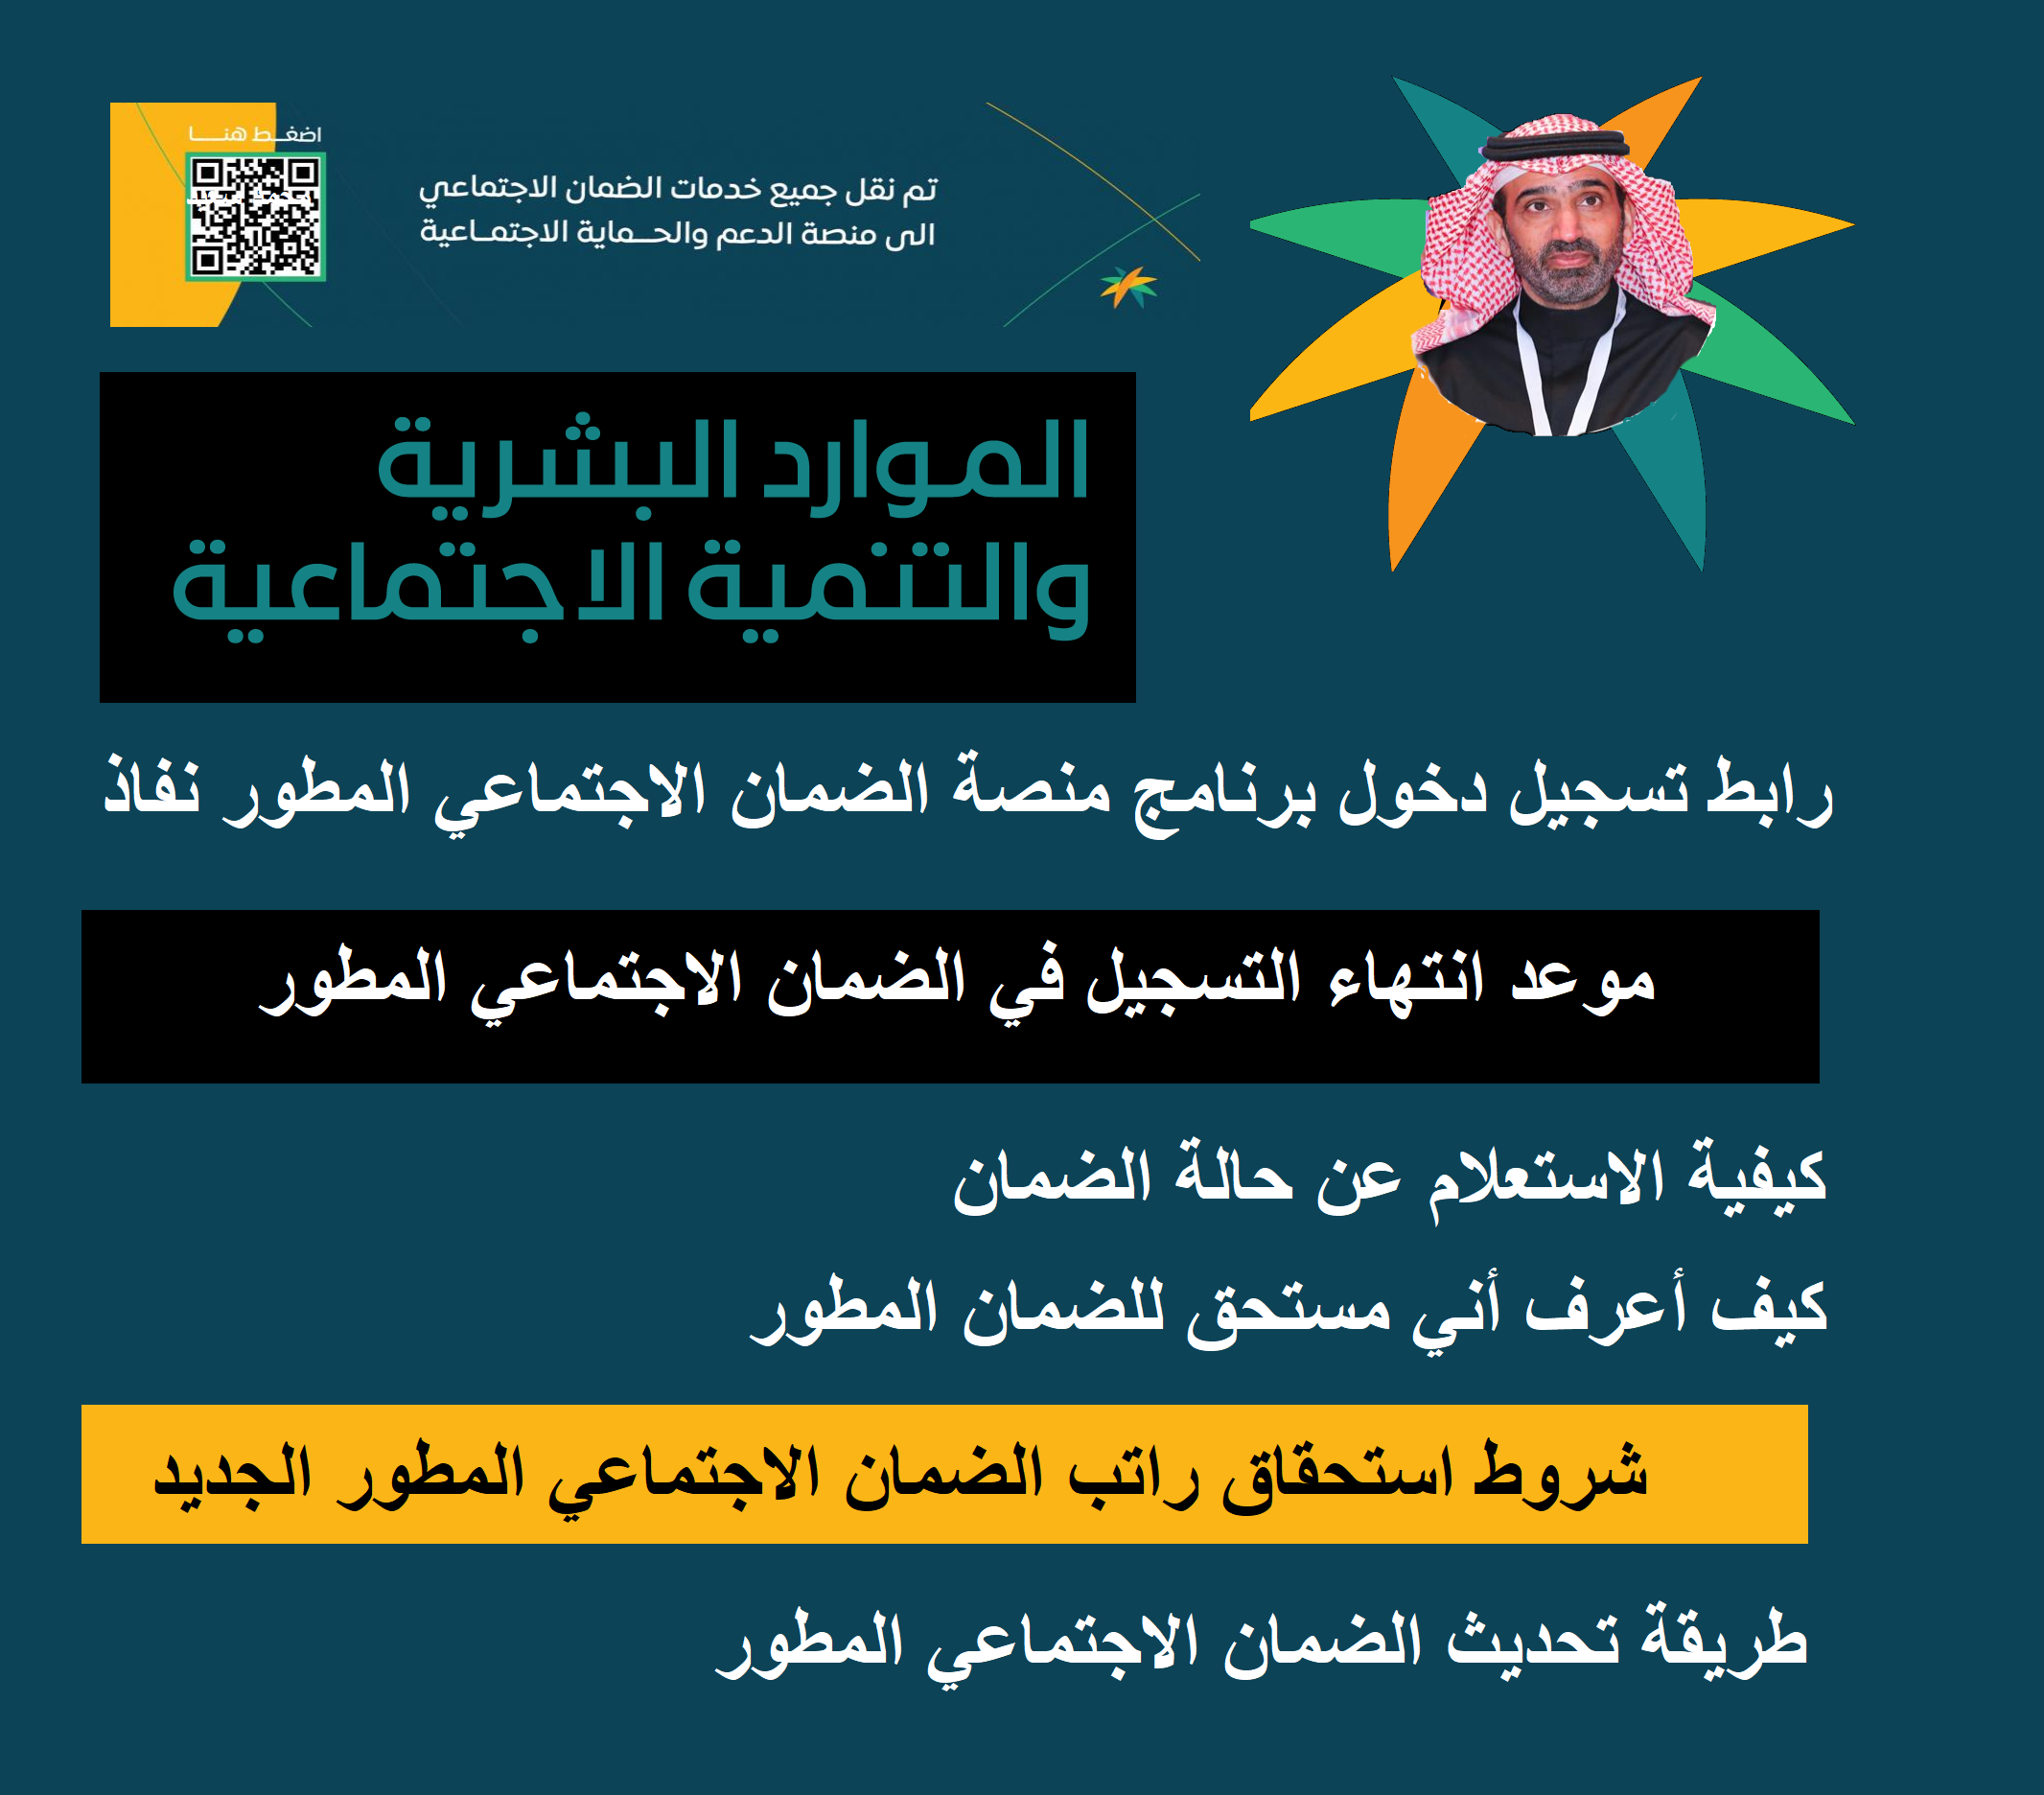 "برامج الدعم الخاصة" رابط تسجيل دخول منصة الضمان والفئات المستثناة من شرط الجنسية السعودية